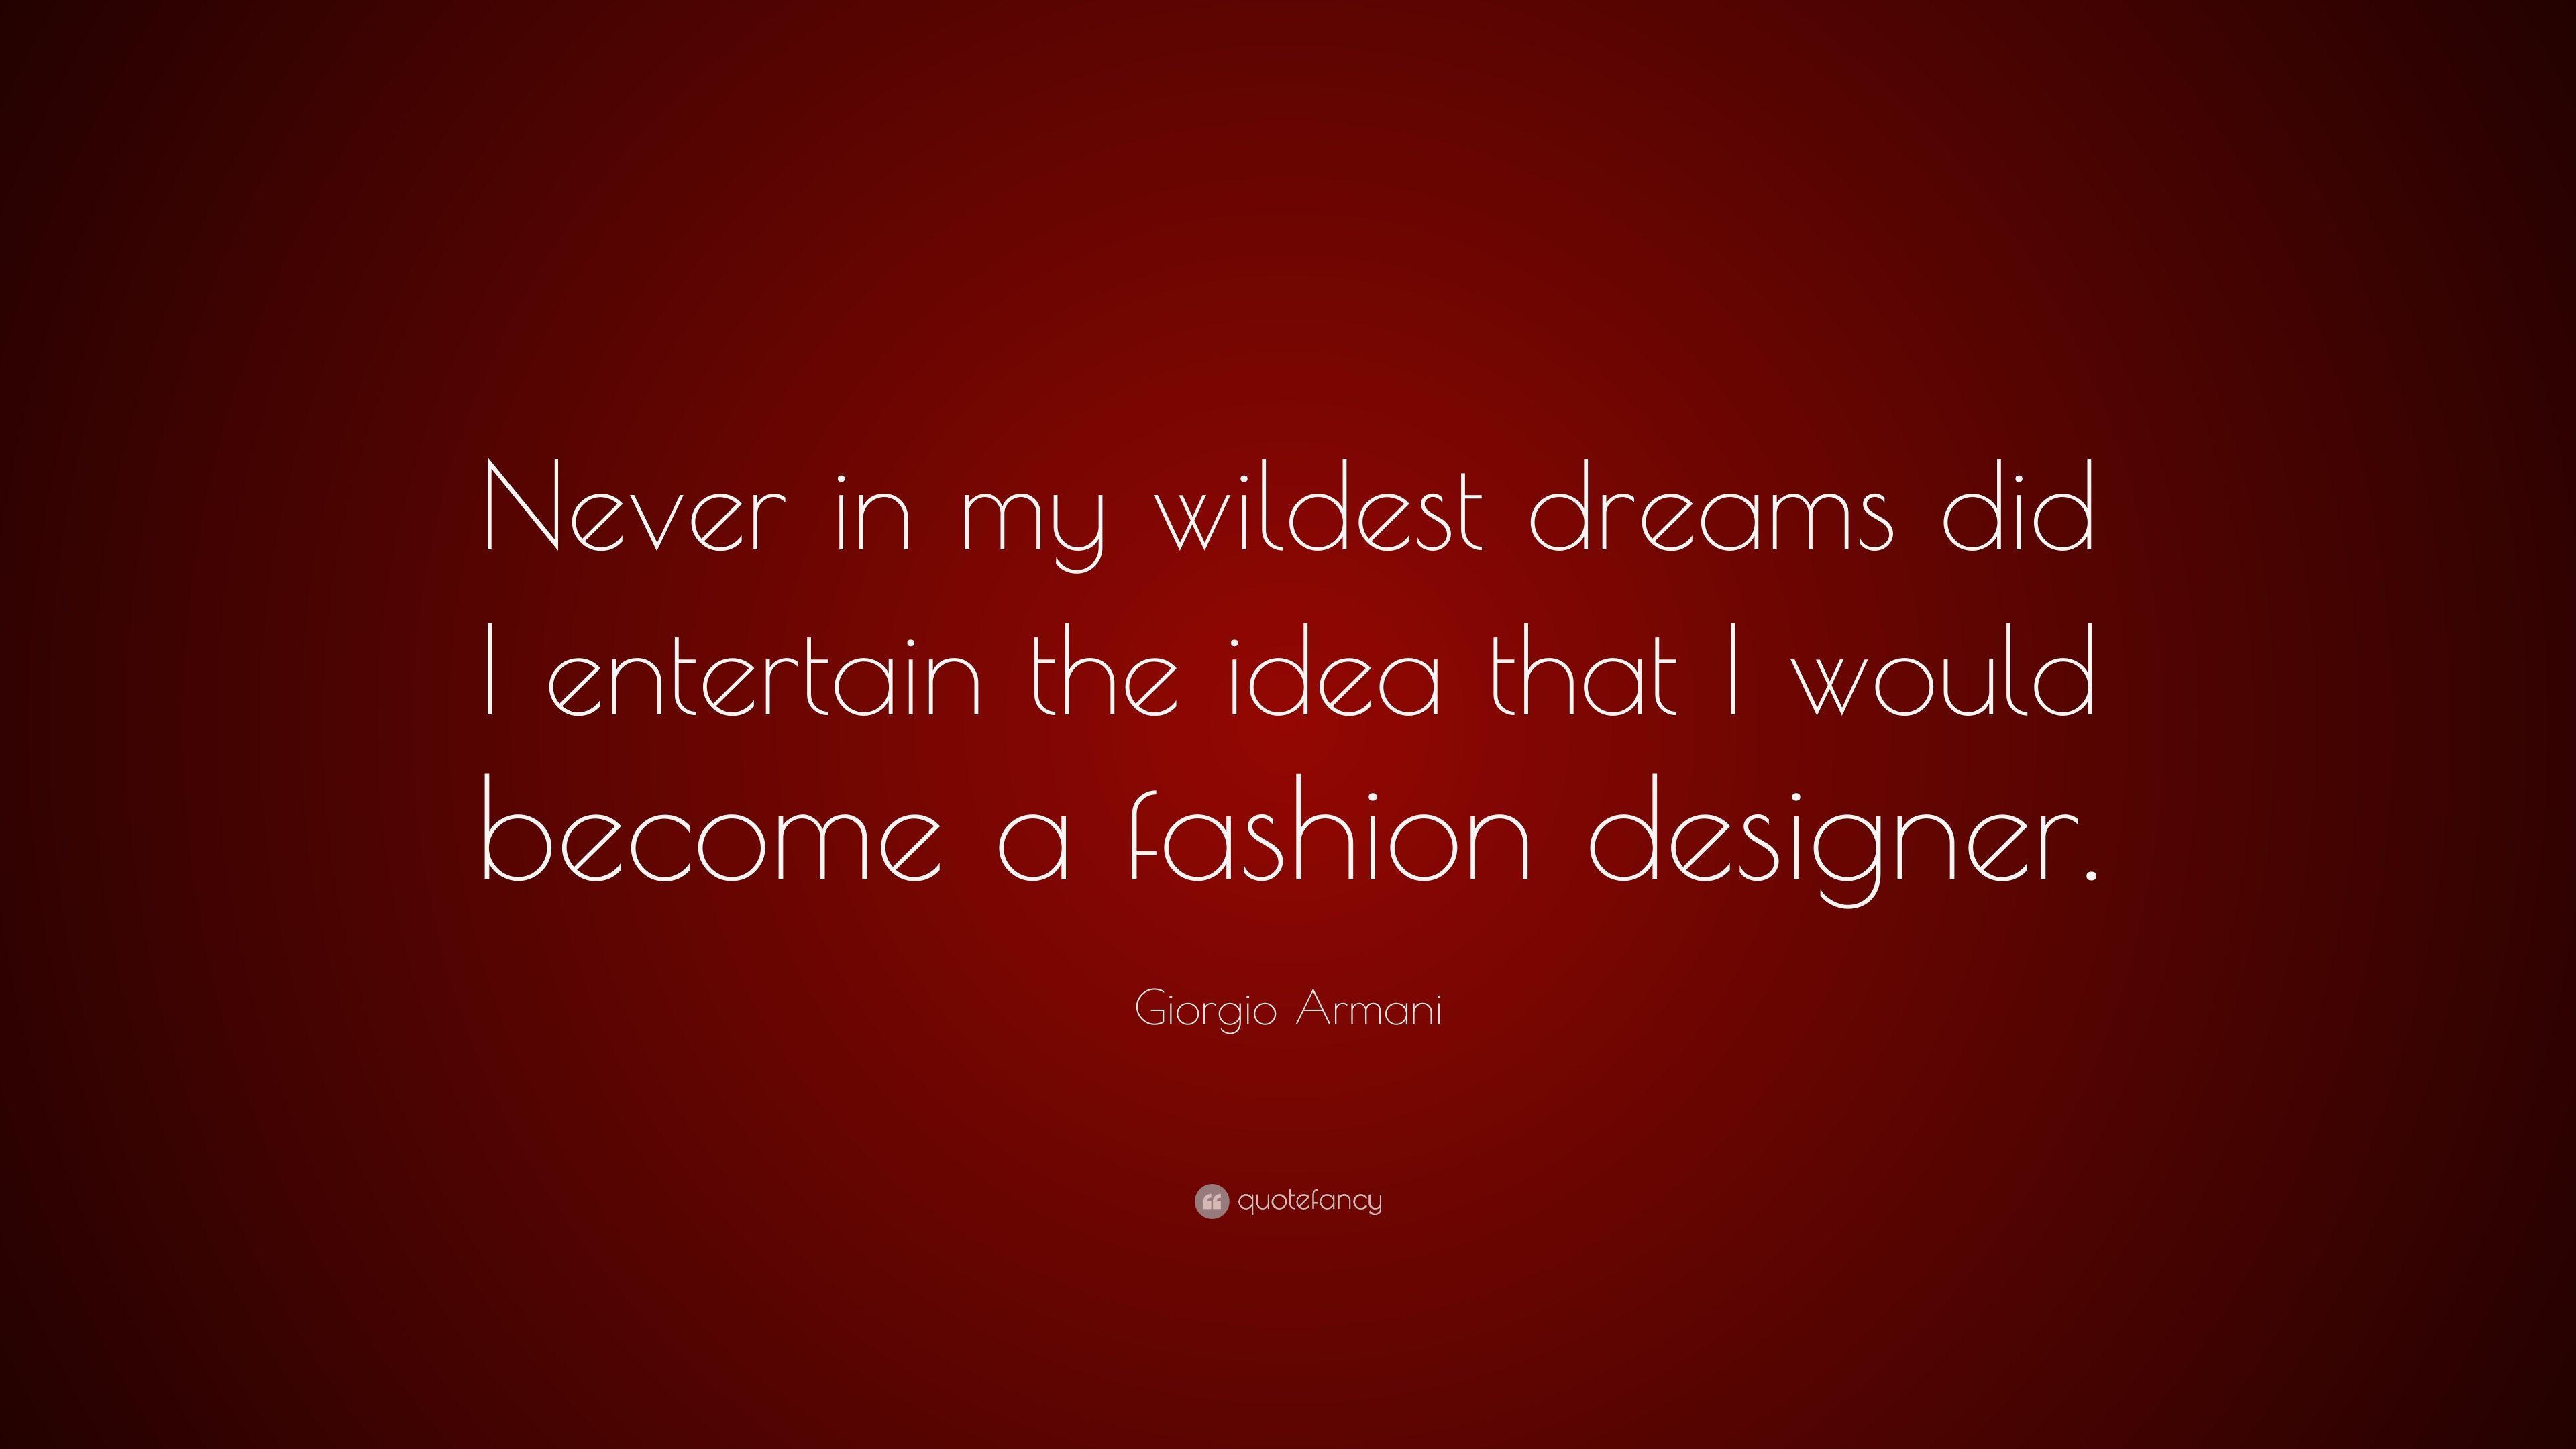 Giorgio Armani Quote: “Never in my wildest dreams did I entertain